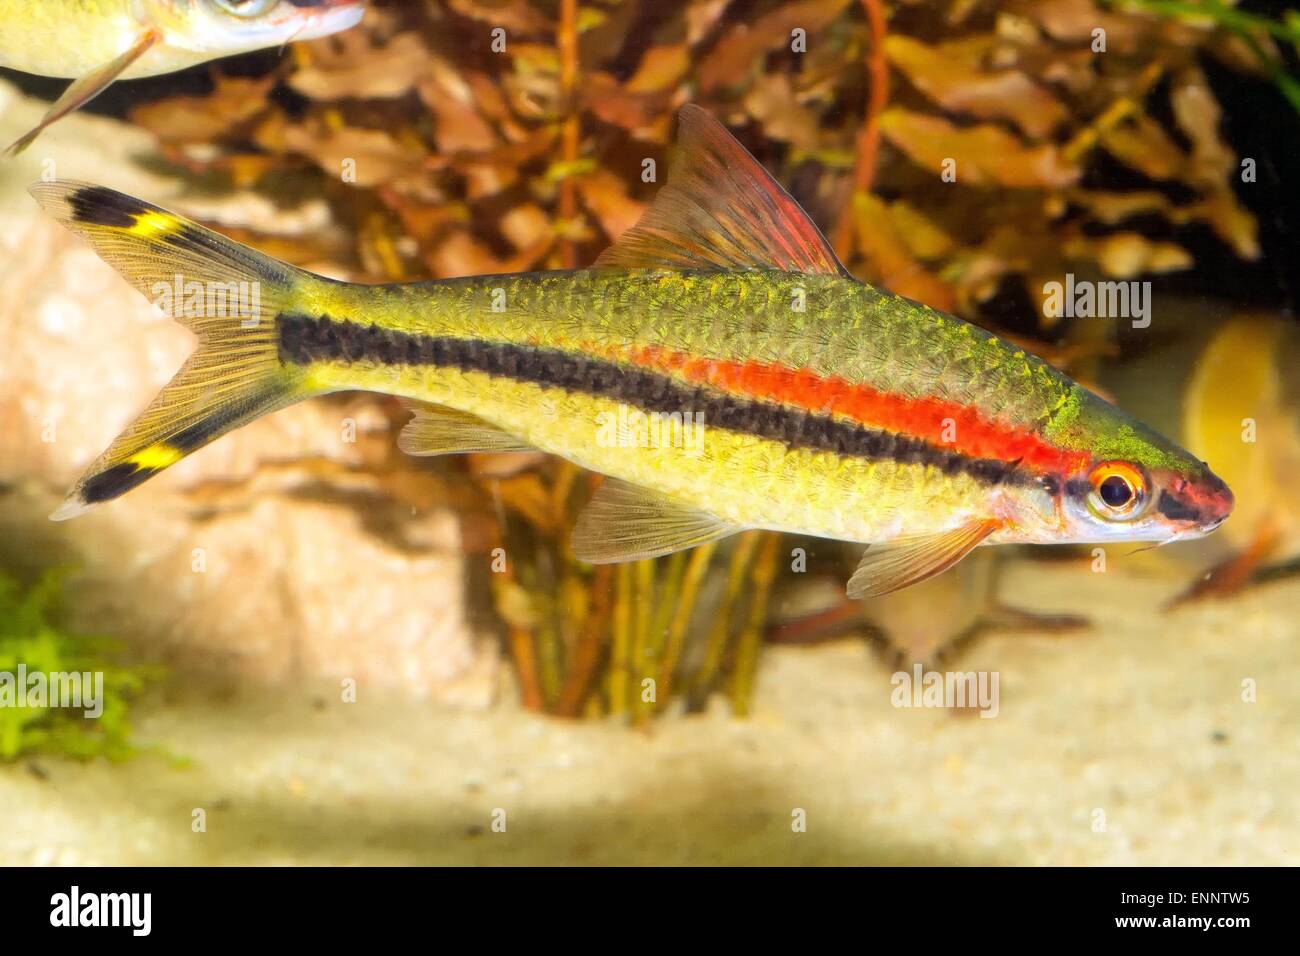 Tropical freshwater aquarium fish from genus Puntius. Stock Photo